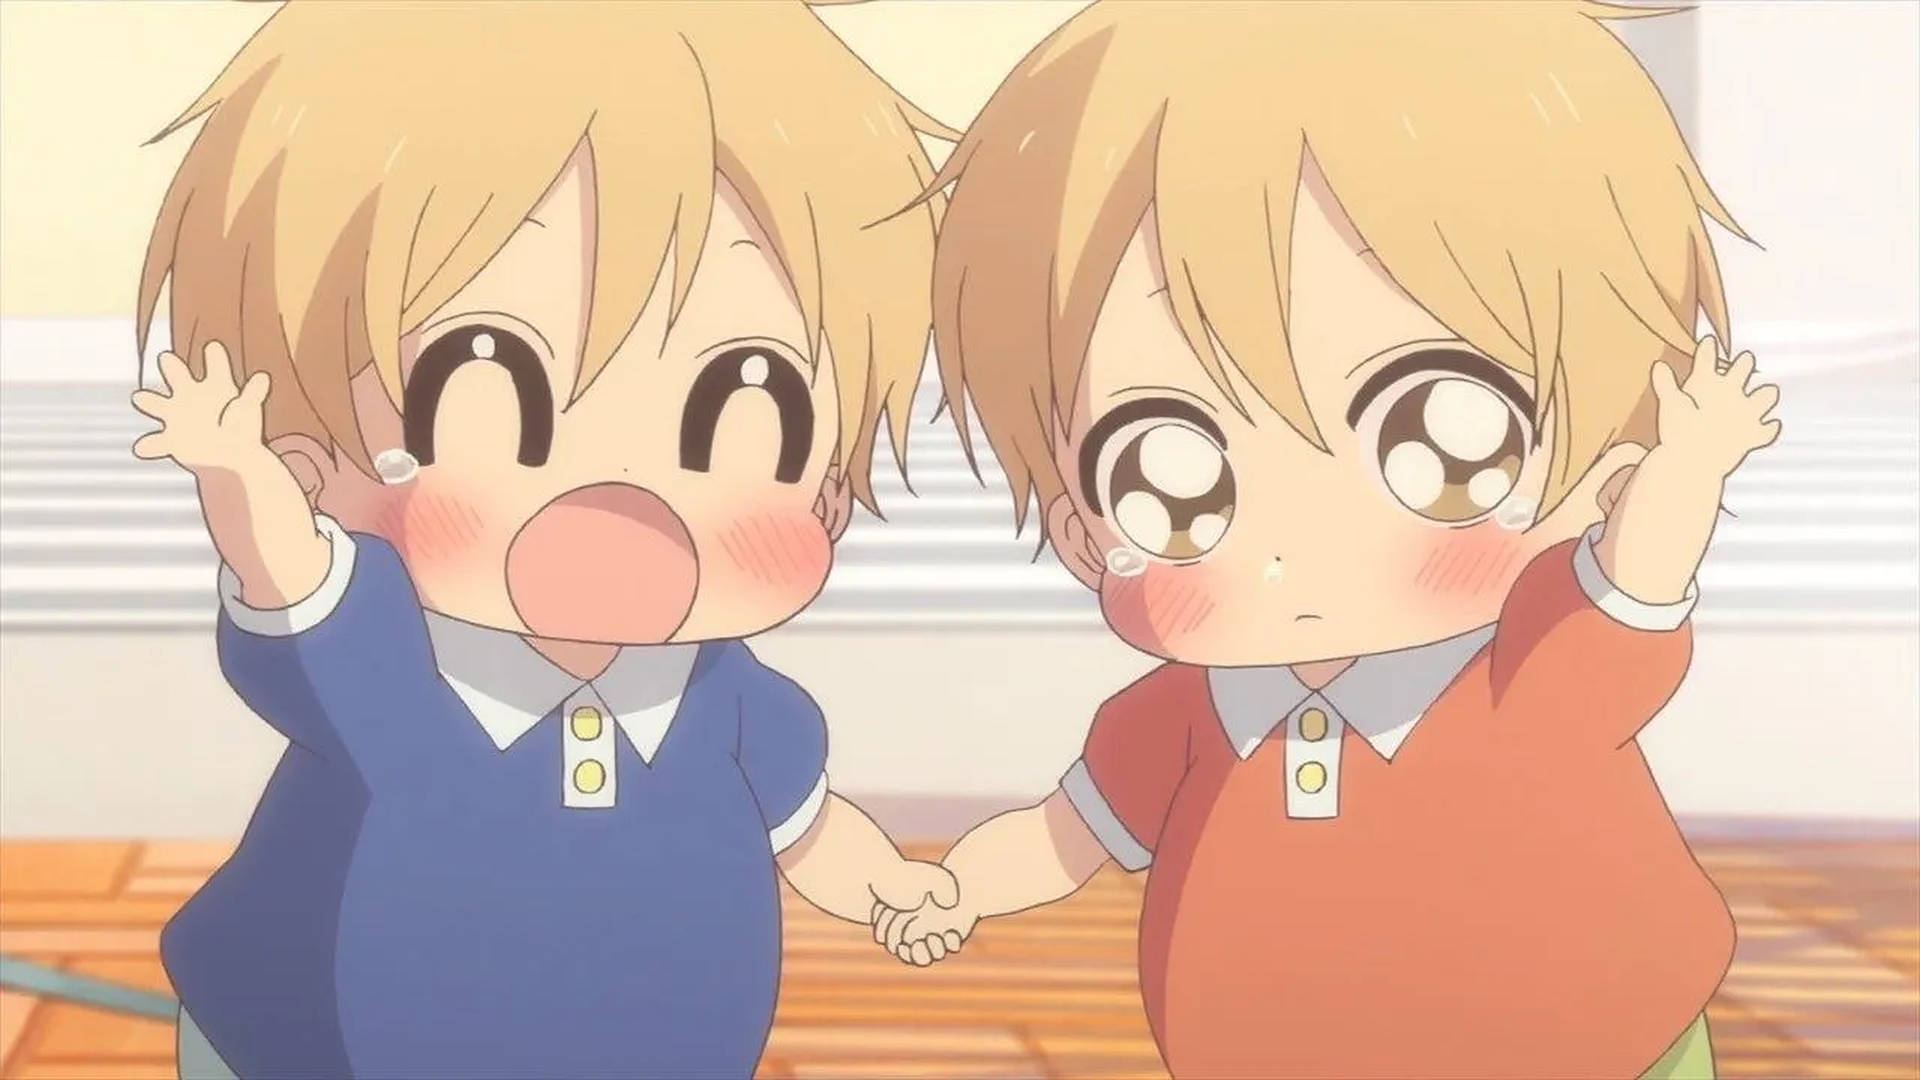 Two Adorable Anime Kids